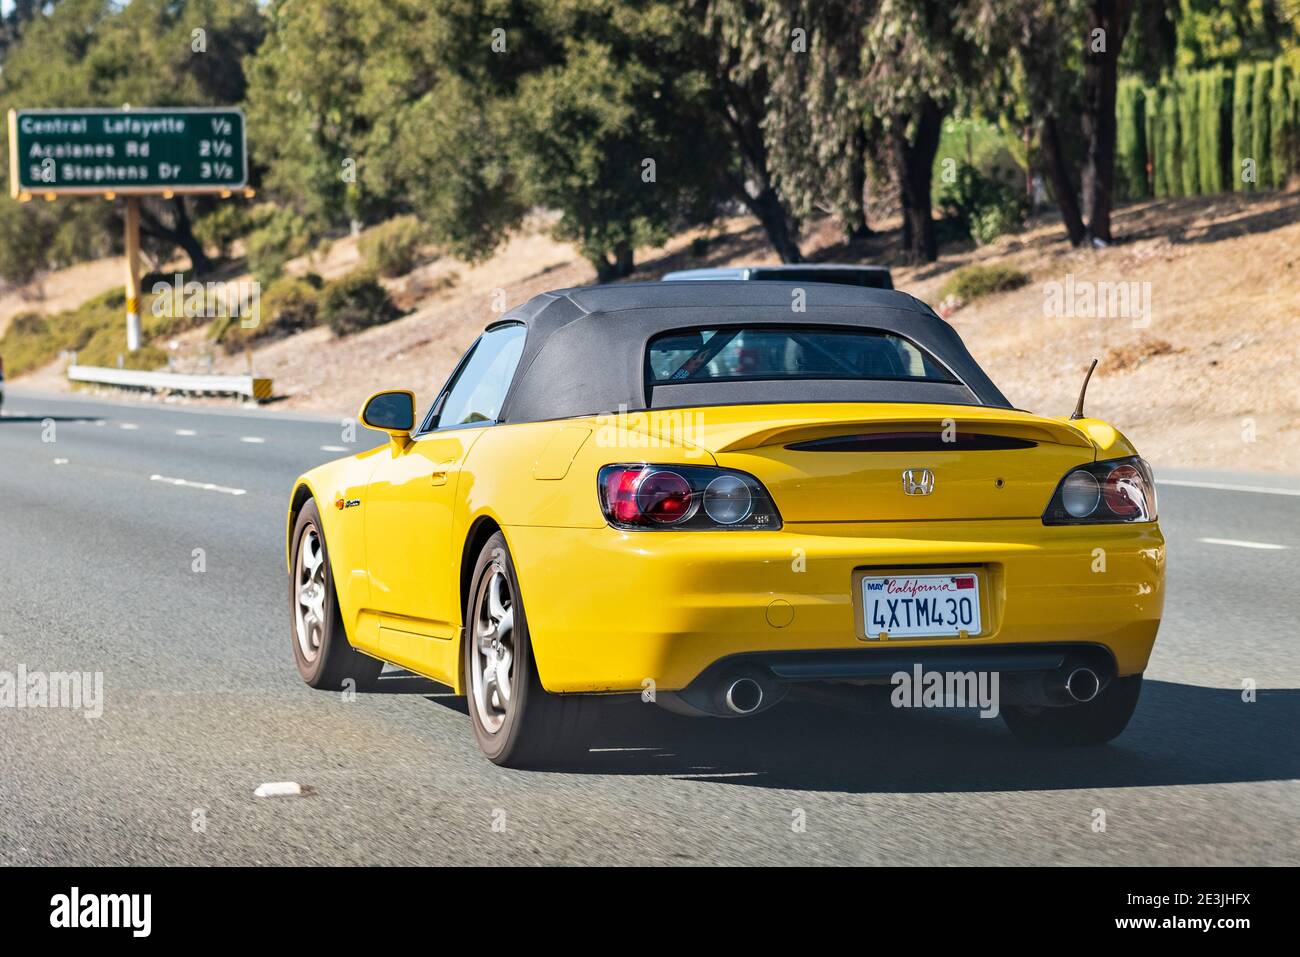 Okt 31, 2020 Lafayette / CA / USA - Rückansicht des Honda S2000 beim Fahren auf der Autobahn Stockfoto